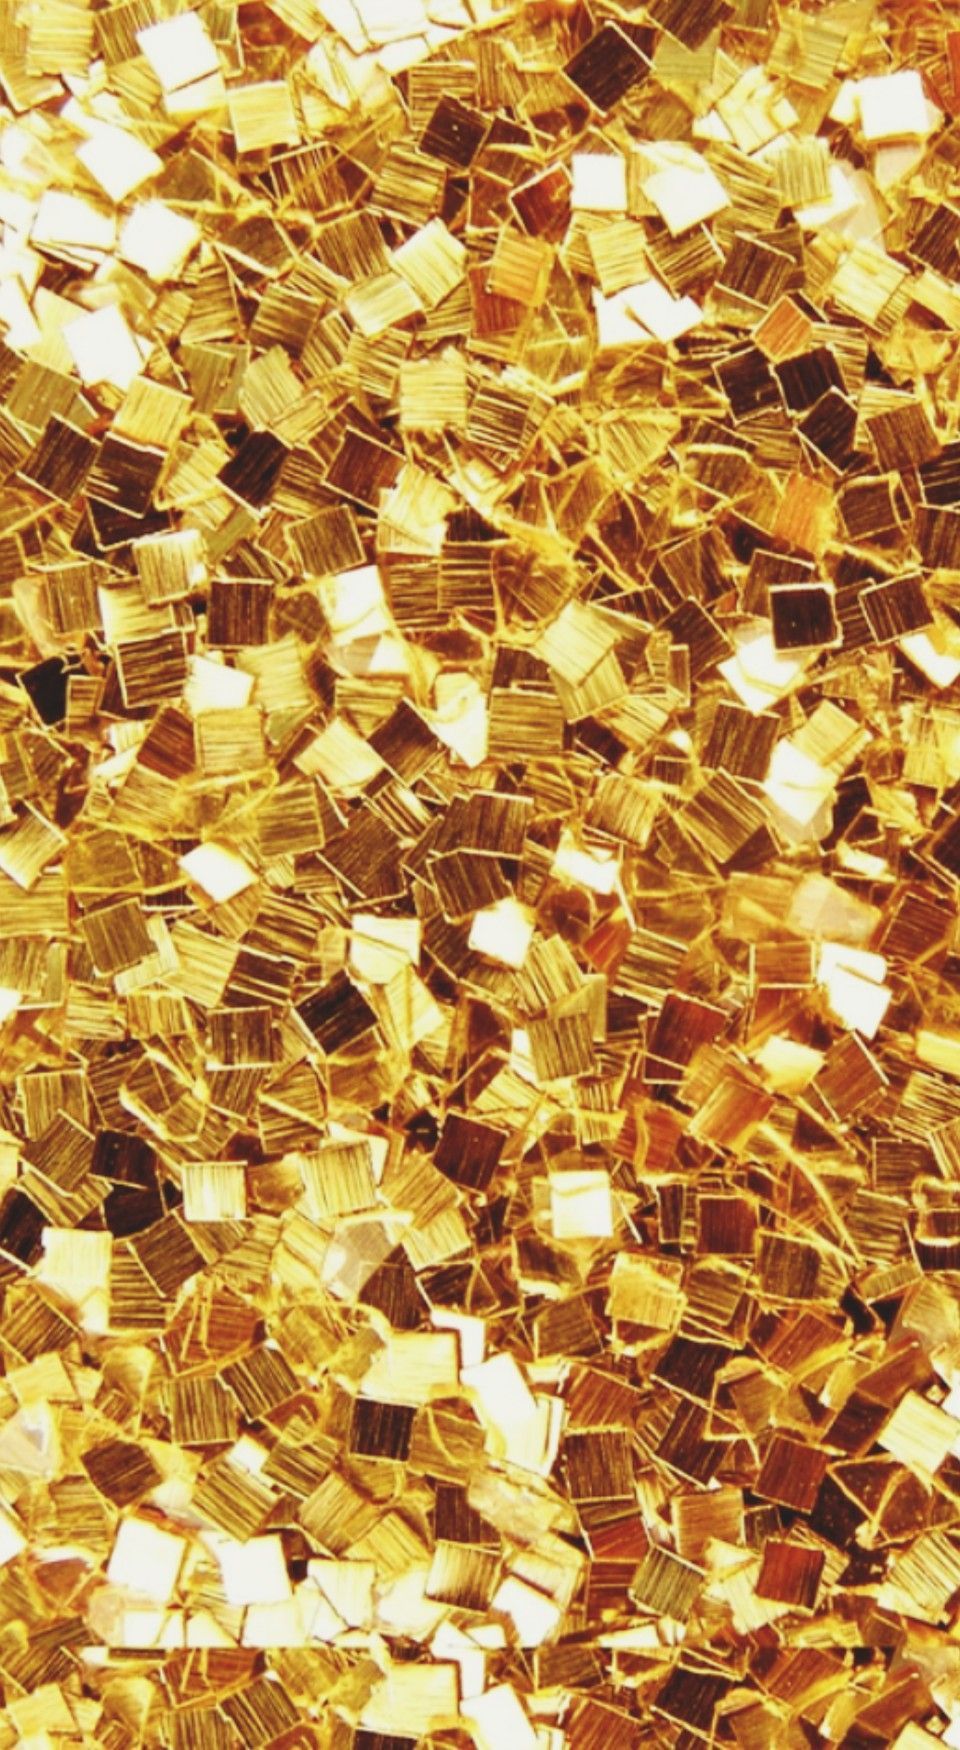 ♡ĞØŁĎ♡. Gold wallpaper, Glitter wallpaper, Abstract wallpaper